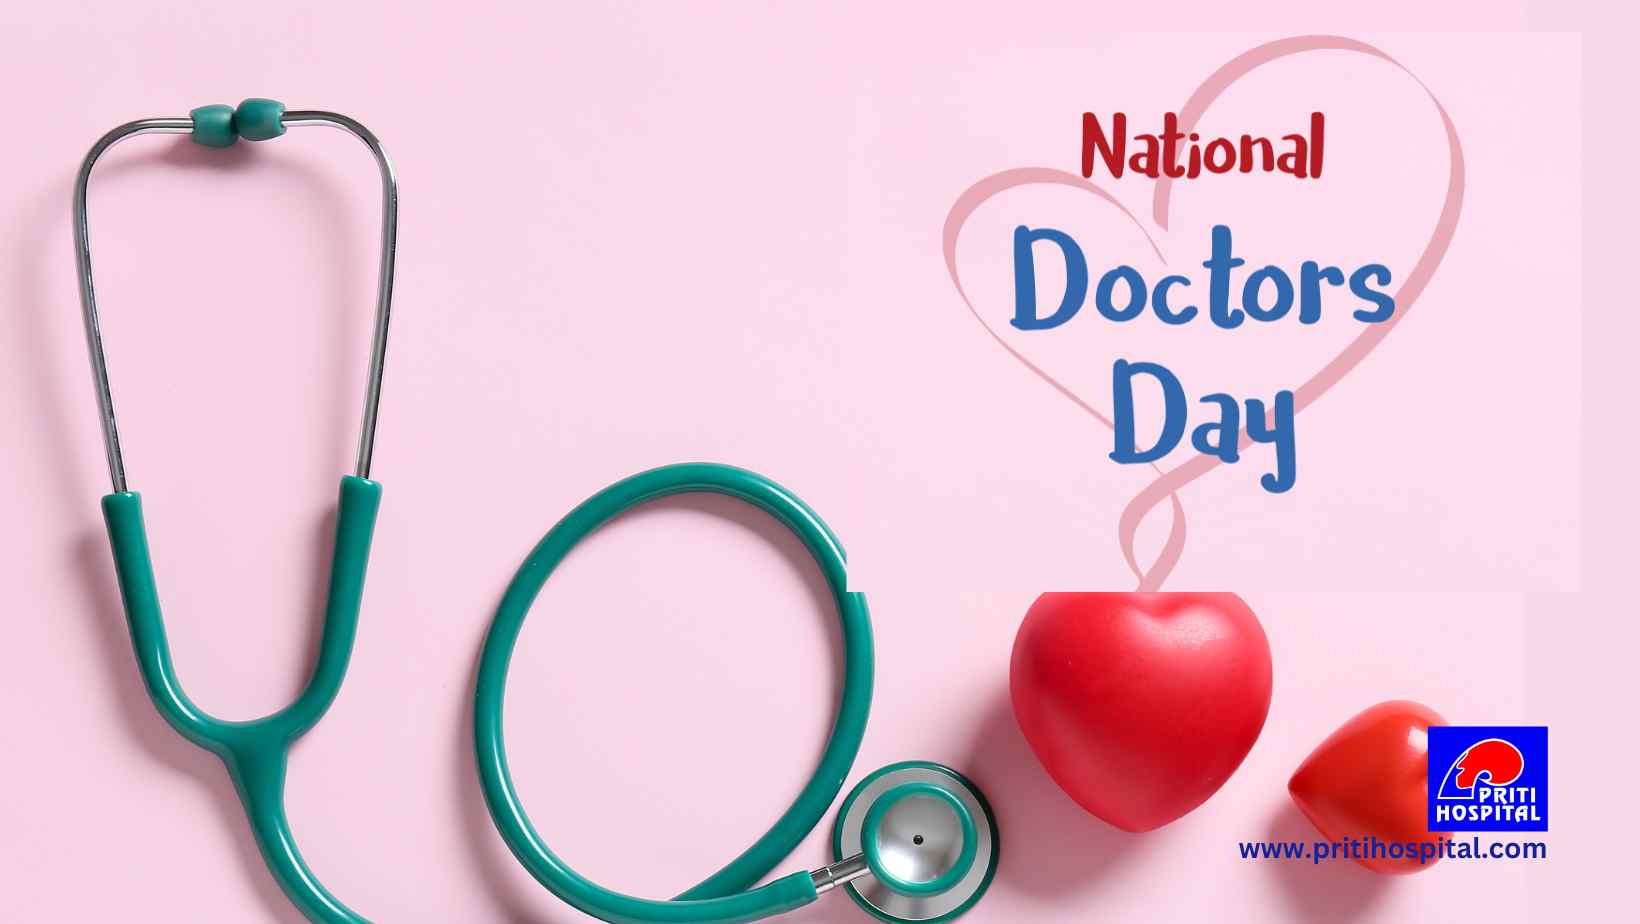 राष्ट्रीय डॉक्टर दिवस: स्वस्थ जीवन के लिए डॉक्टरों का योगदान – प्रीती हाॅस्पिटल